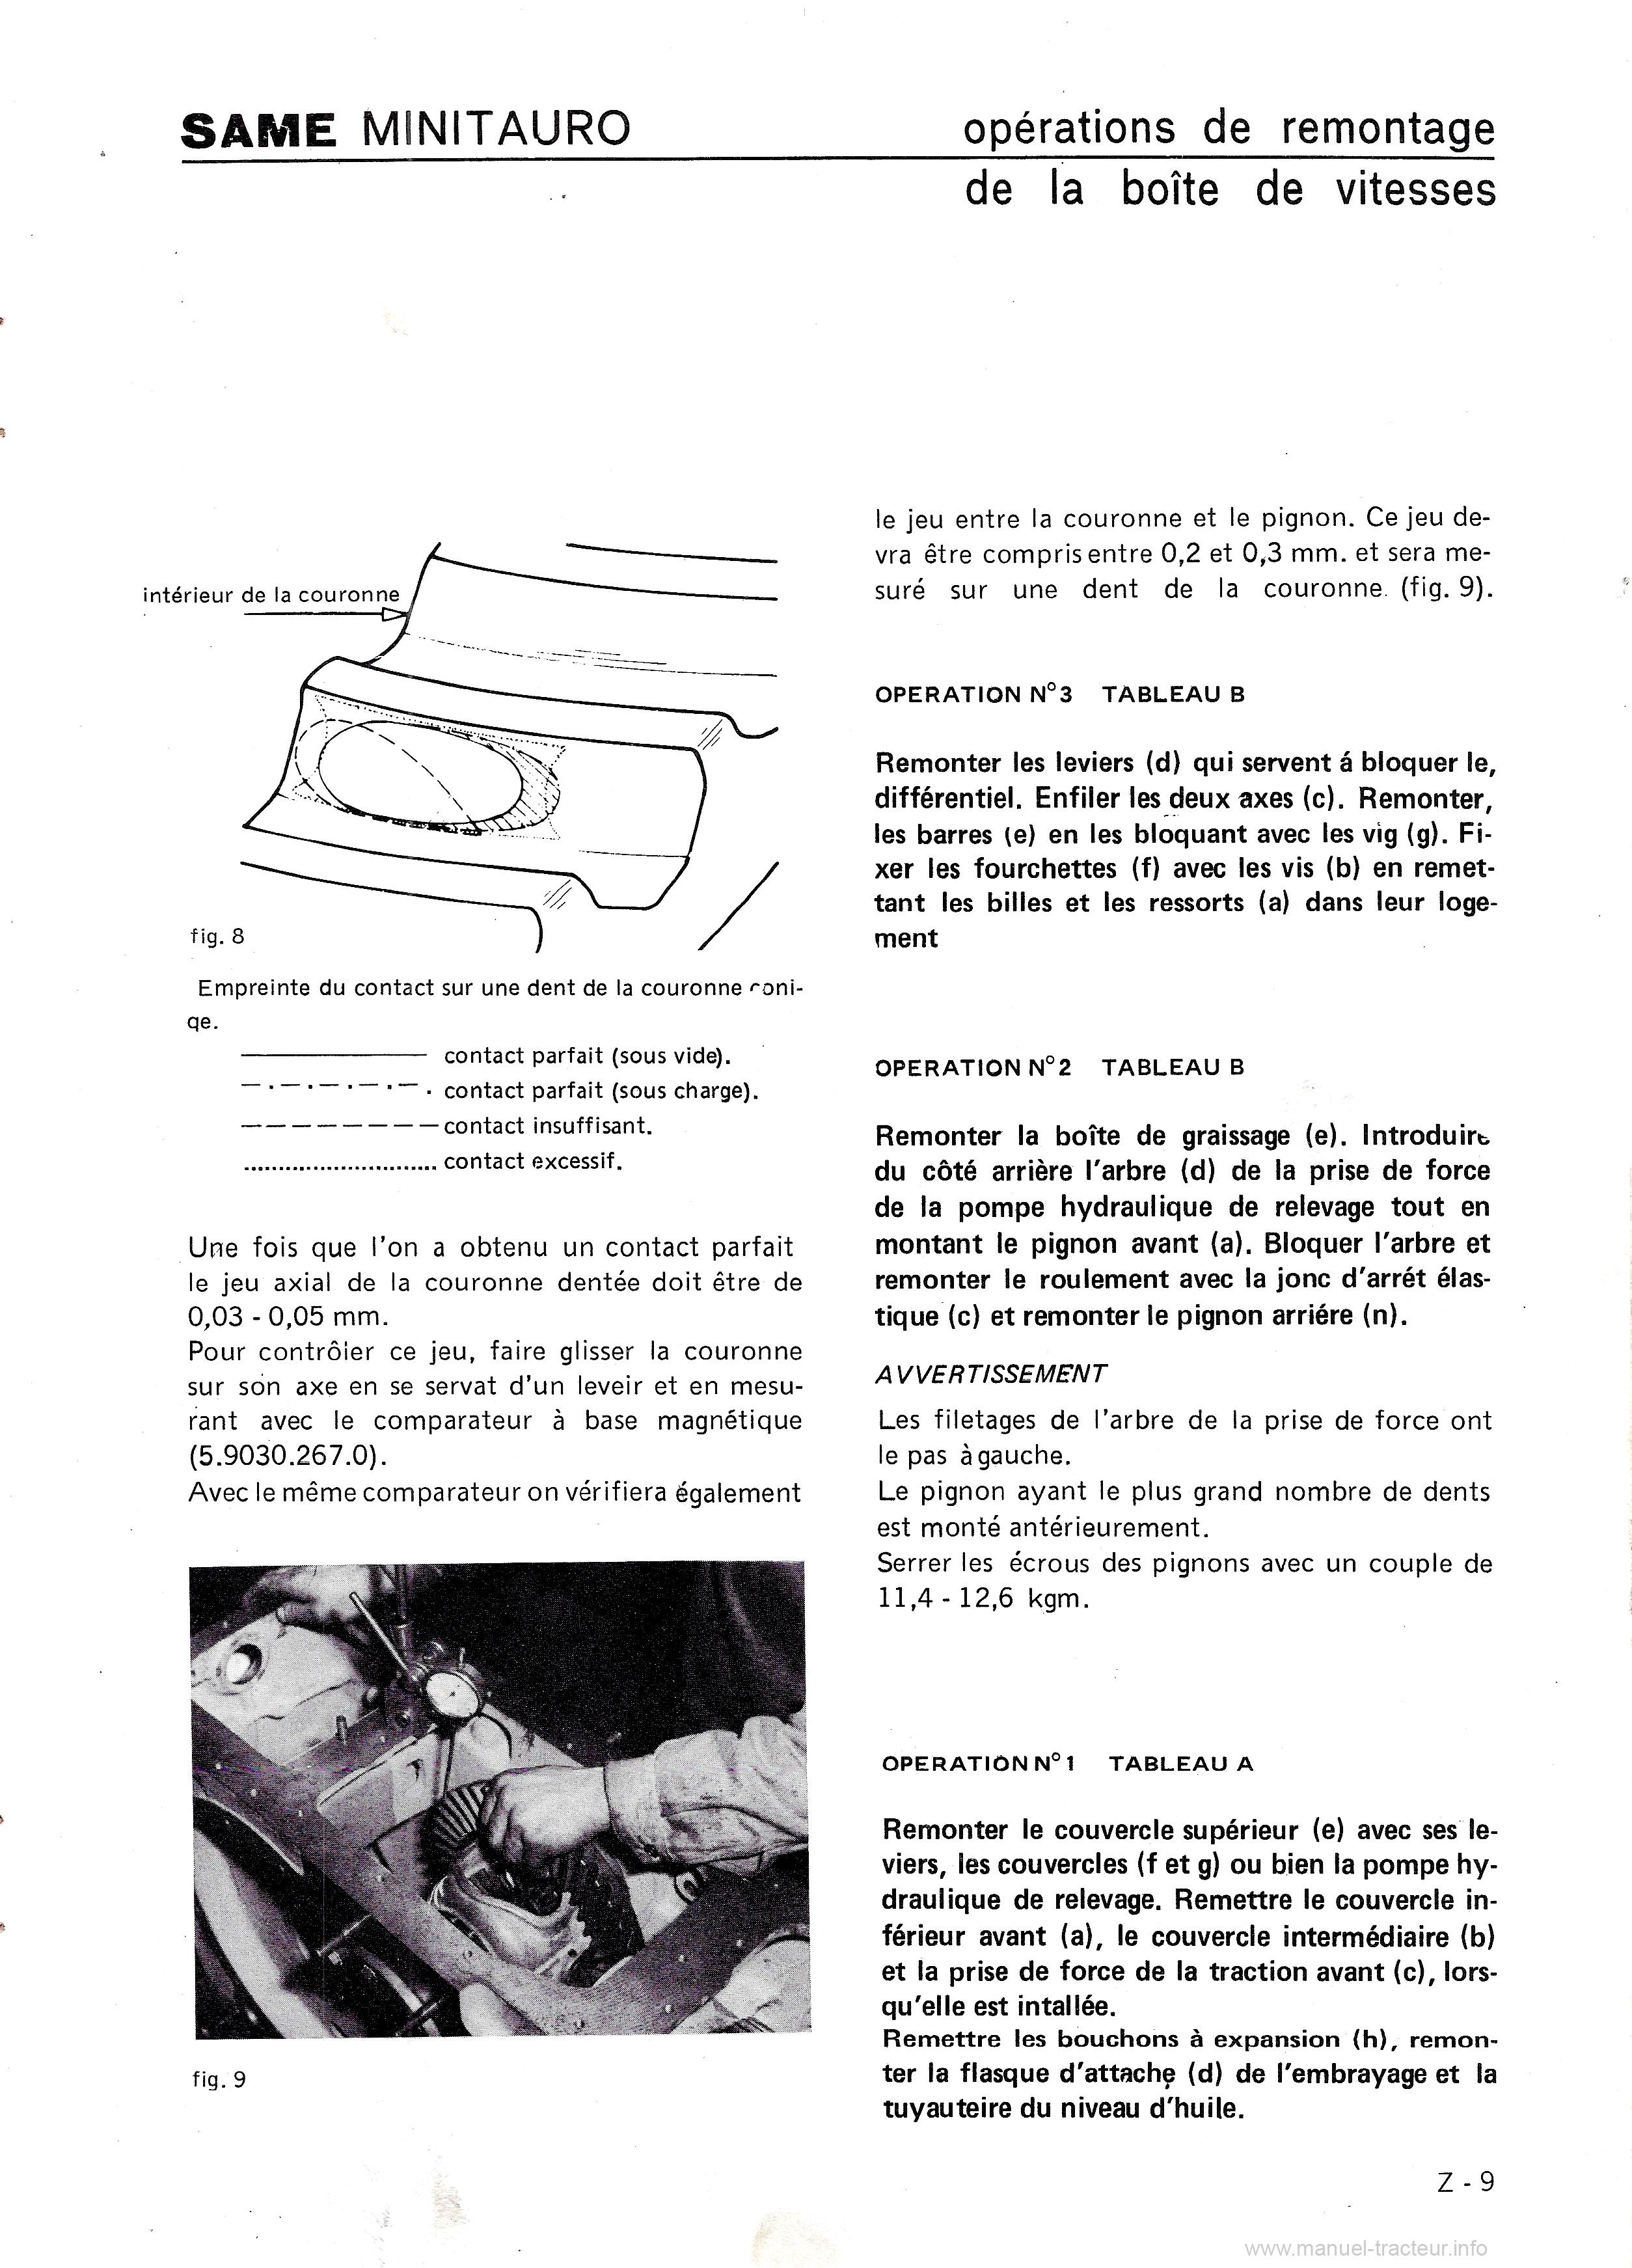 Quatrième page du Manuel de contrôle et de réparation du tracteur Same Minitauro